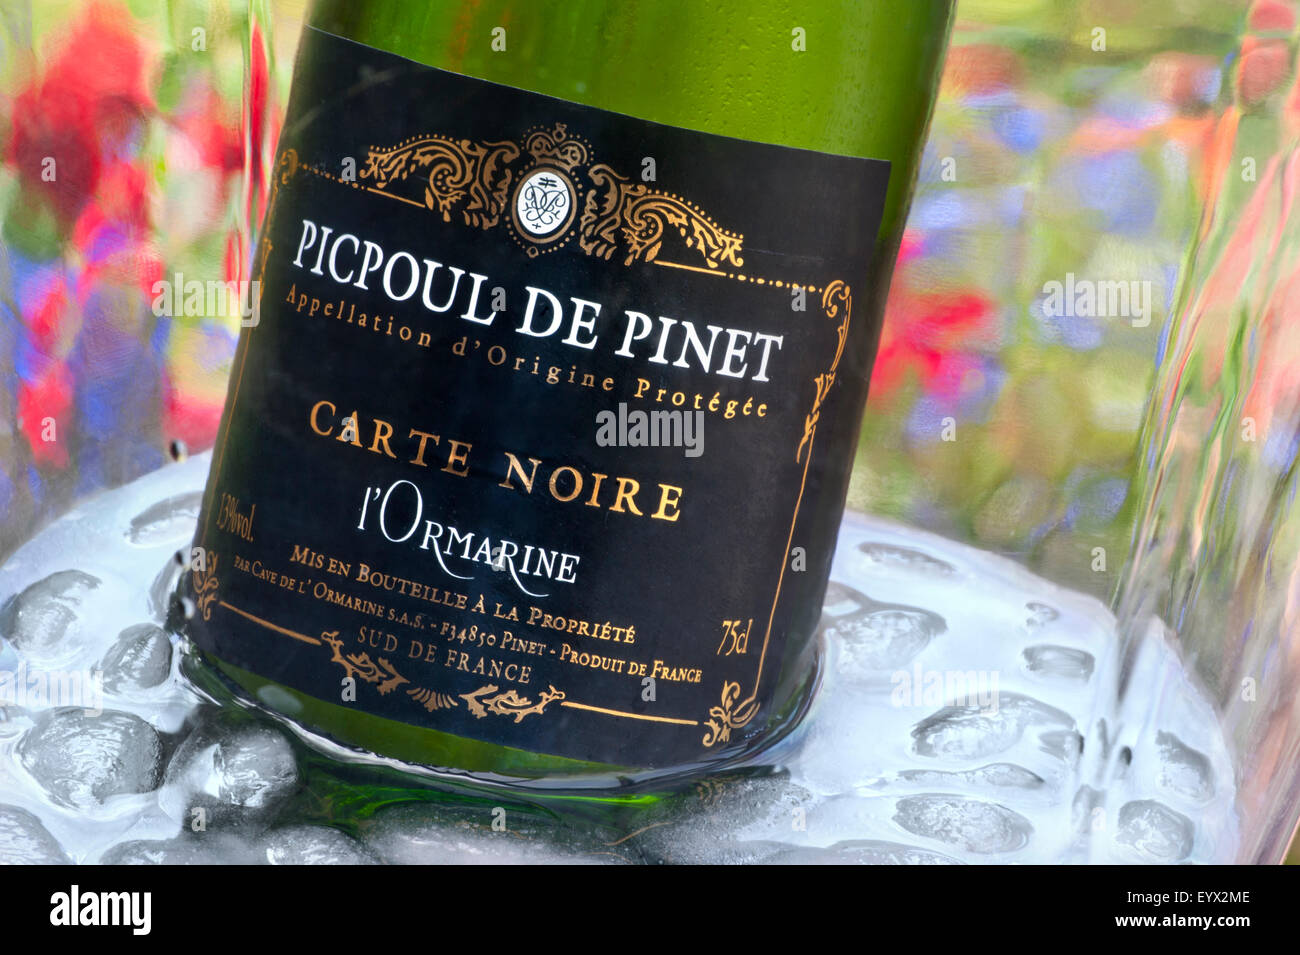 Picpoul de Pinet etiqueta de vino blanco seco Languedoc en enfriador de vino en terraza de jardín floral de verano al aire libre Languedoc Francia Foto de stock